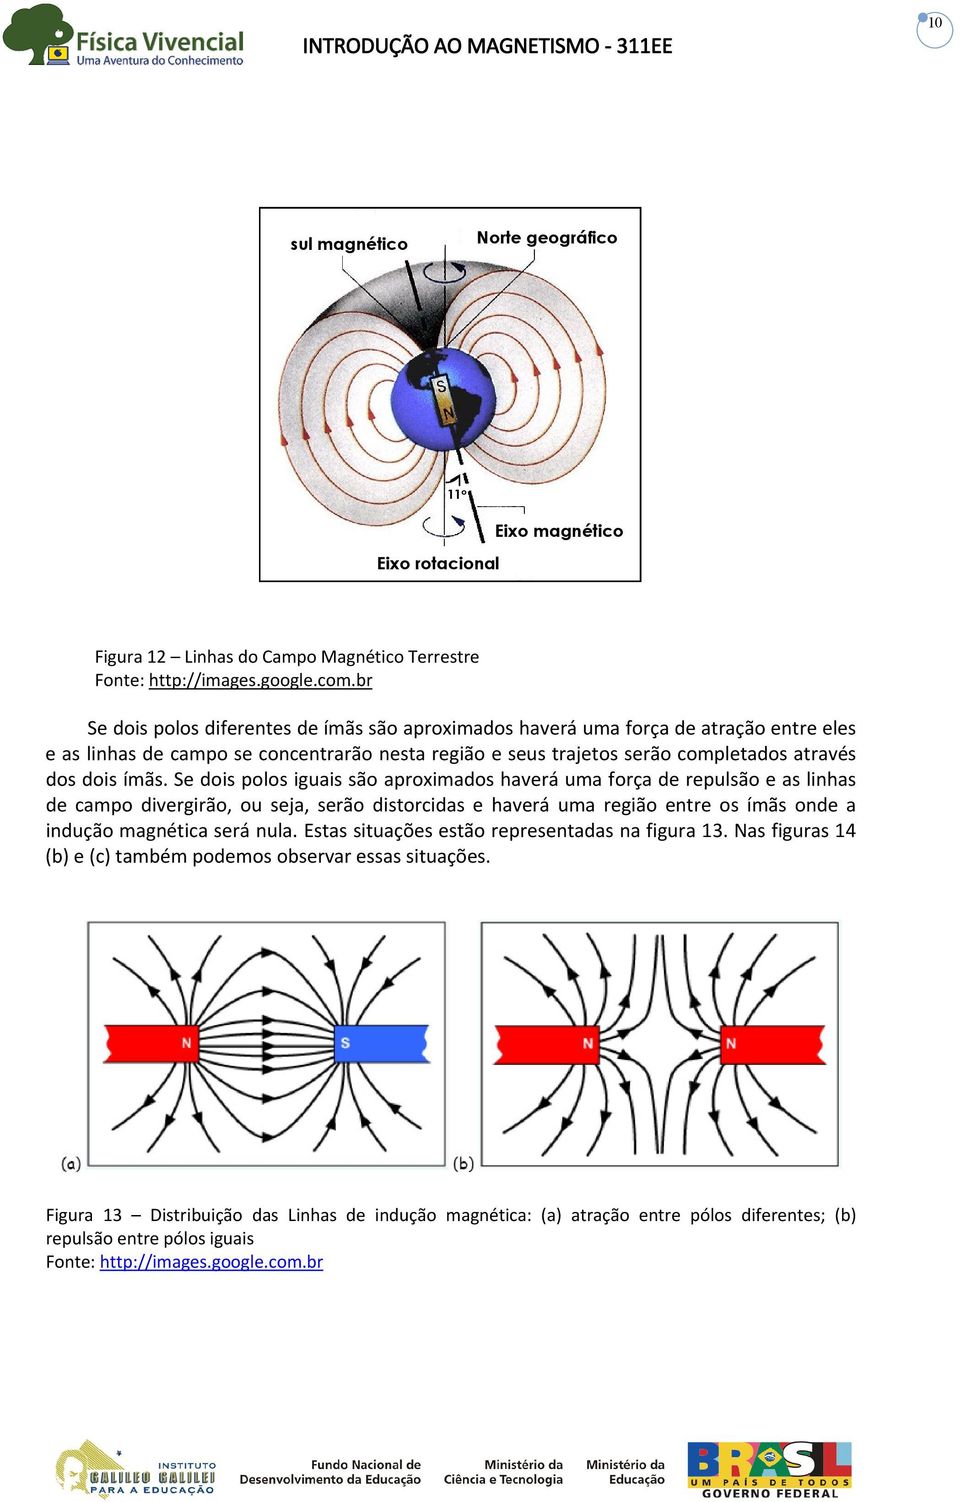 Se dois polos iguais são aproximados haverá uma força de repulsão e as linhas de campo divergirão, ou seja, serão distorcidas e haverá uma região entre os ímãs onde a indução magnética será nula.